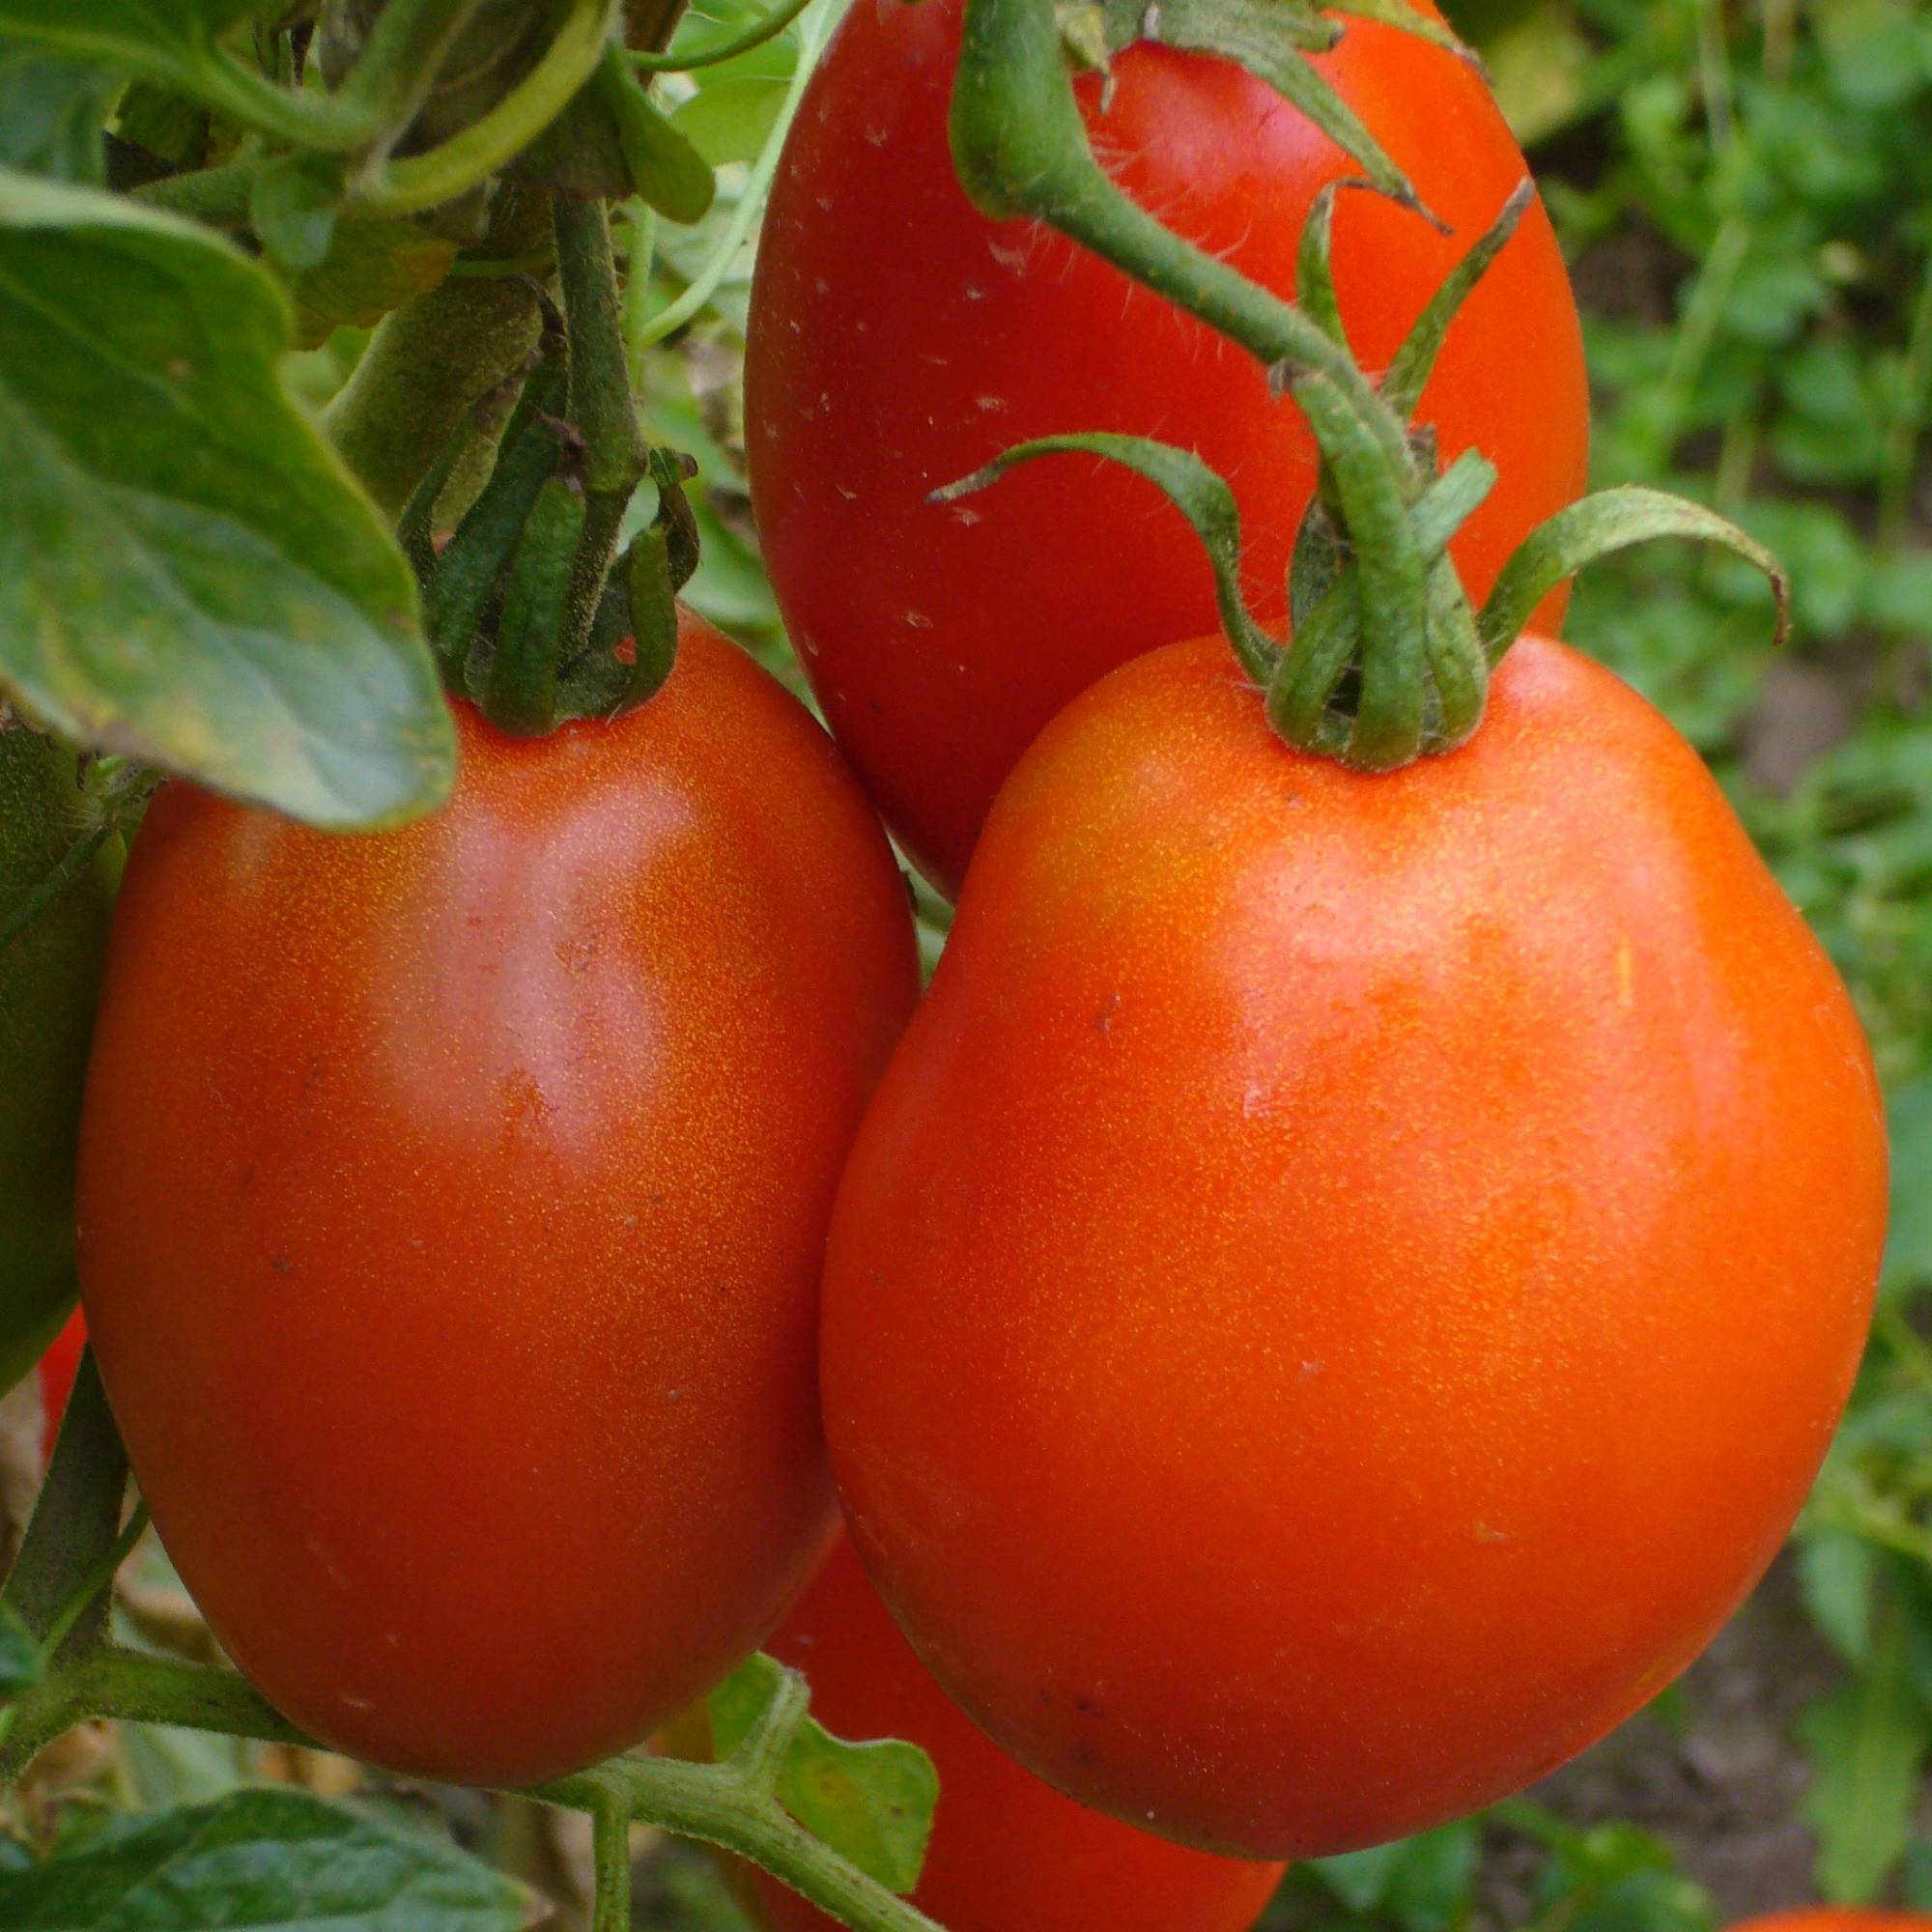 Описание сорта томата Боец (Буян), его характеристика и выращивание